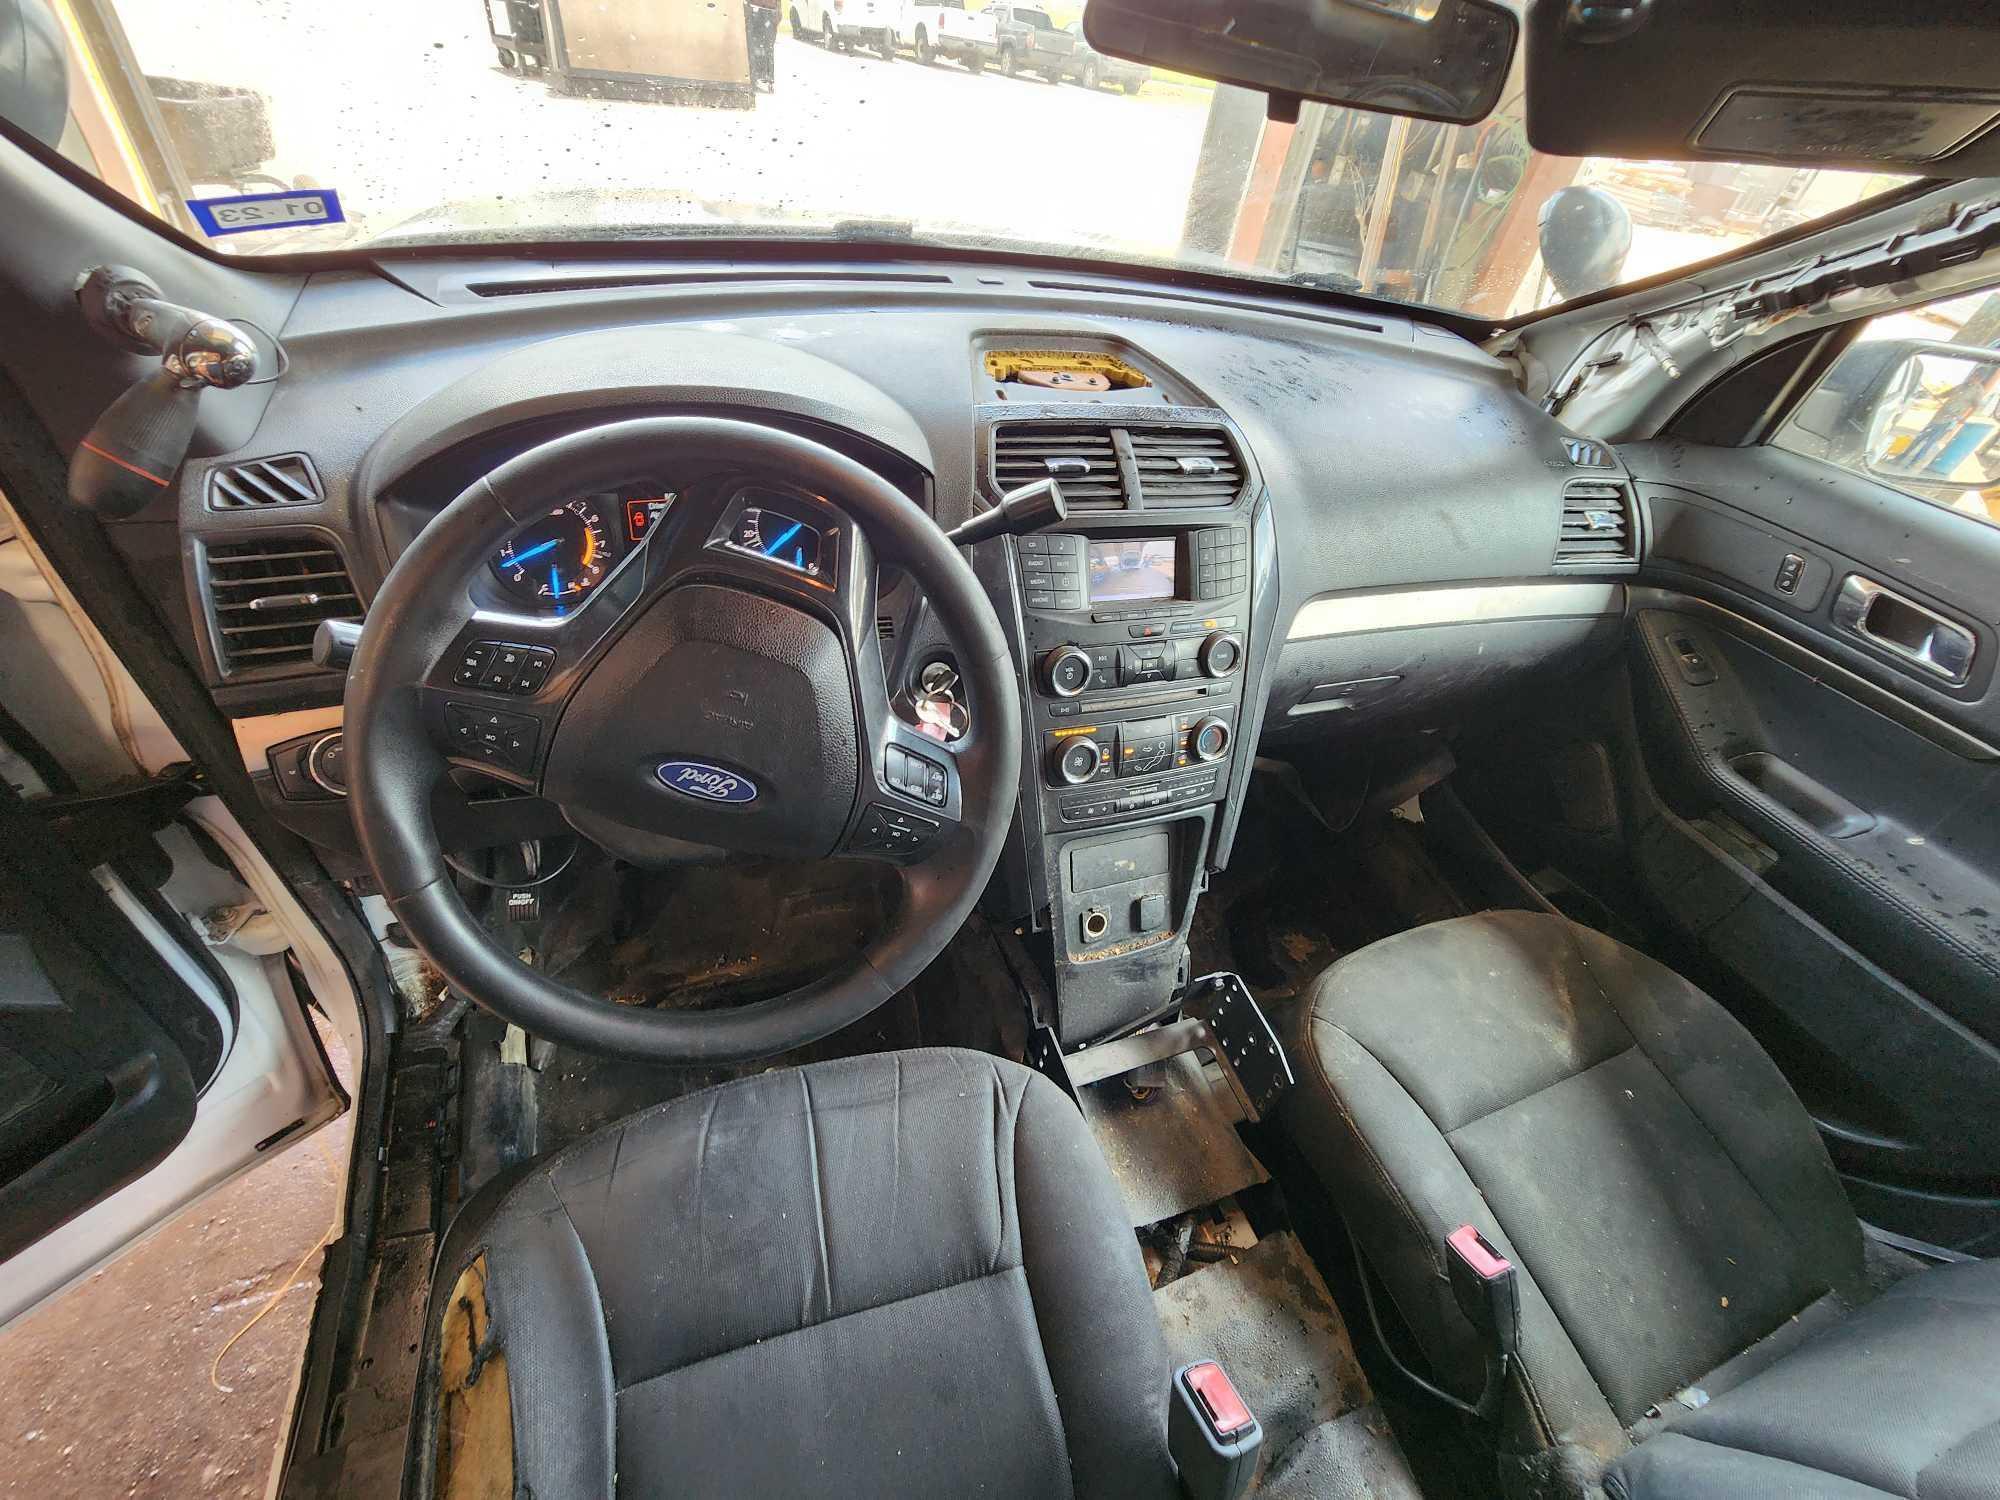 2016 Ford Explorer Multipurpose Vehicle (MPV), VIN # 1FM5K8AR5GGA02013